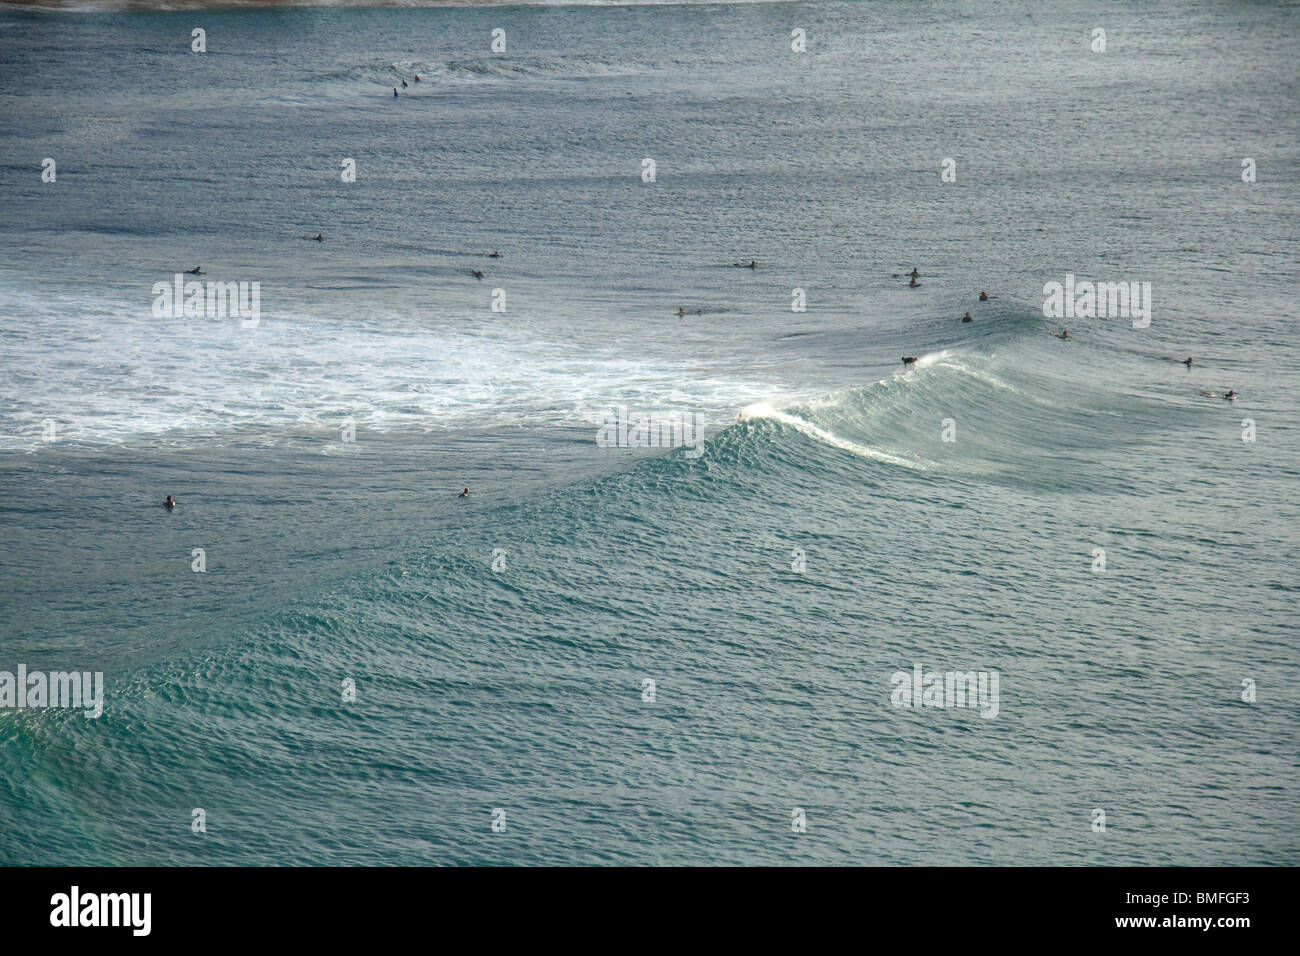 Vue aérienne de surfers et de la houle, Sunset Beach, North Shore, Oahu, Hawaii Banque D'Images